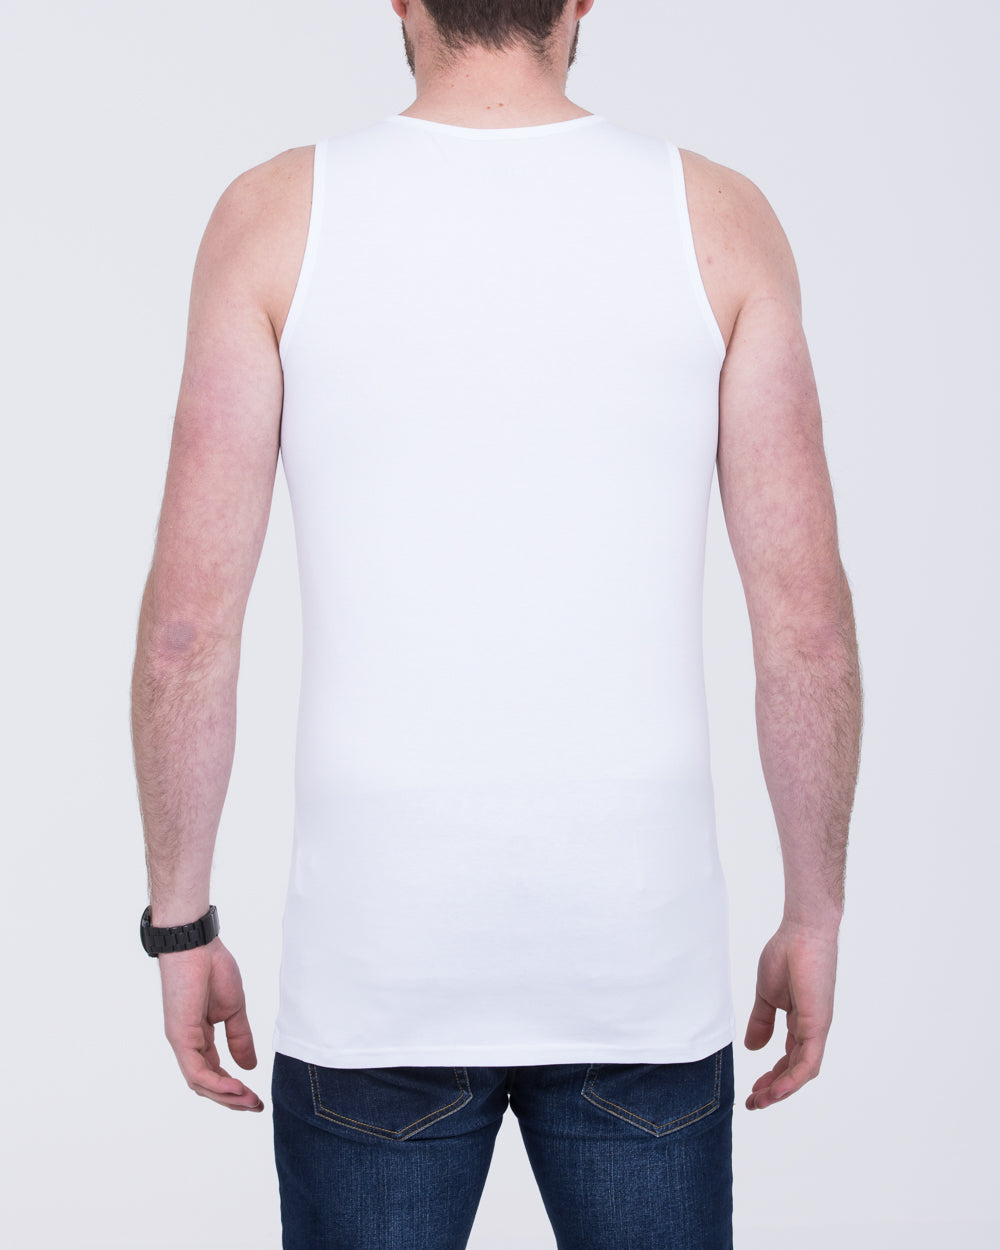 Girav Sleeveless Tall Vest (white) Twin Pack